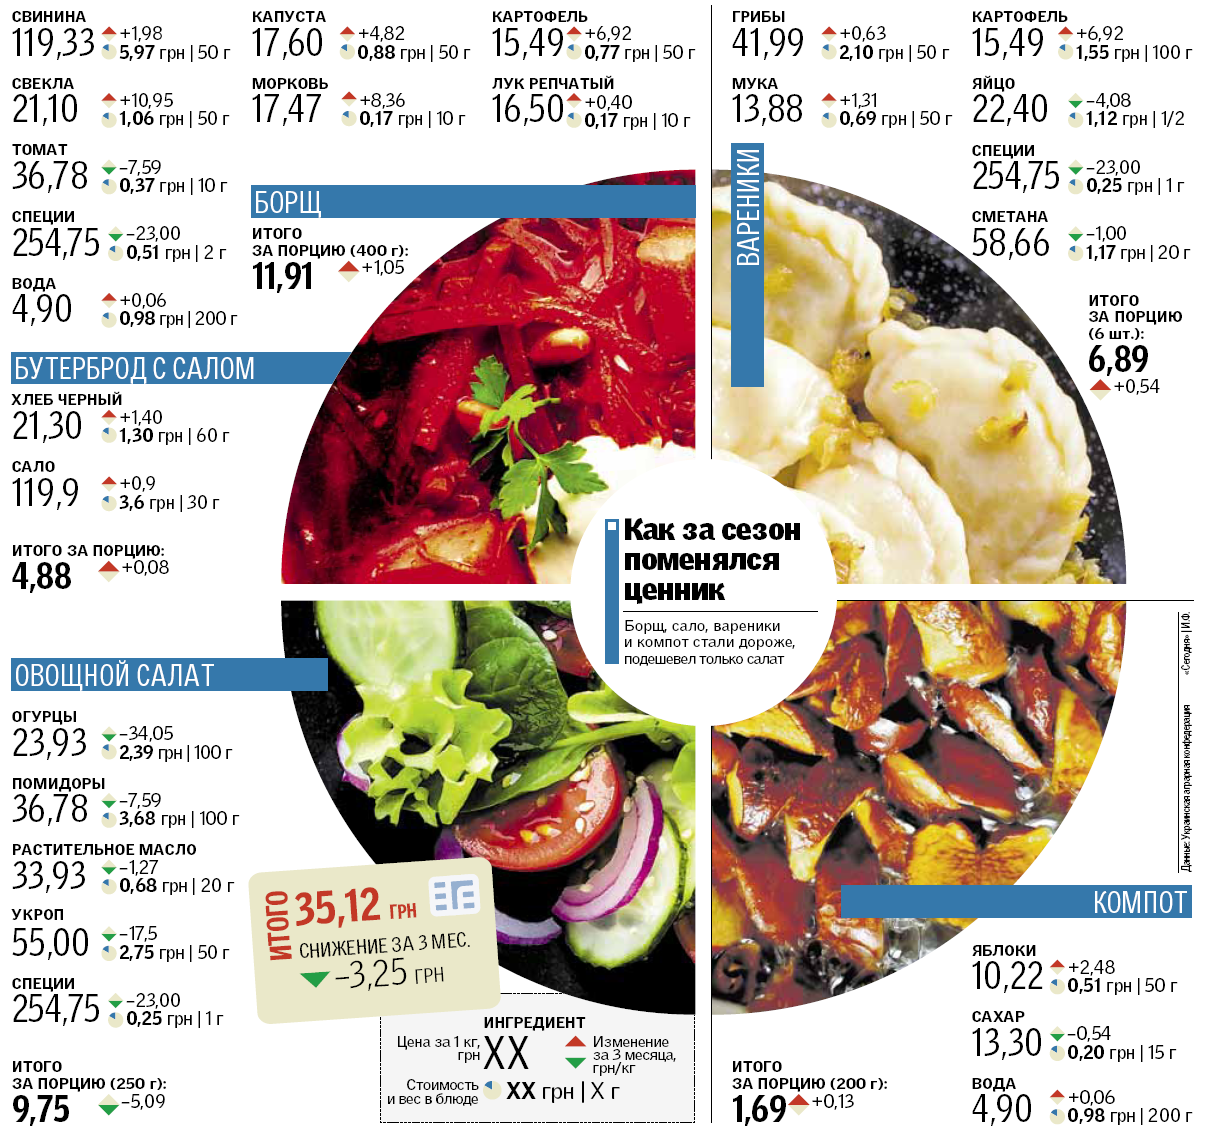  Во сколько обойдется обед украинца этим летом: все о ценах на продукты